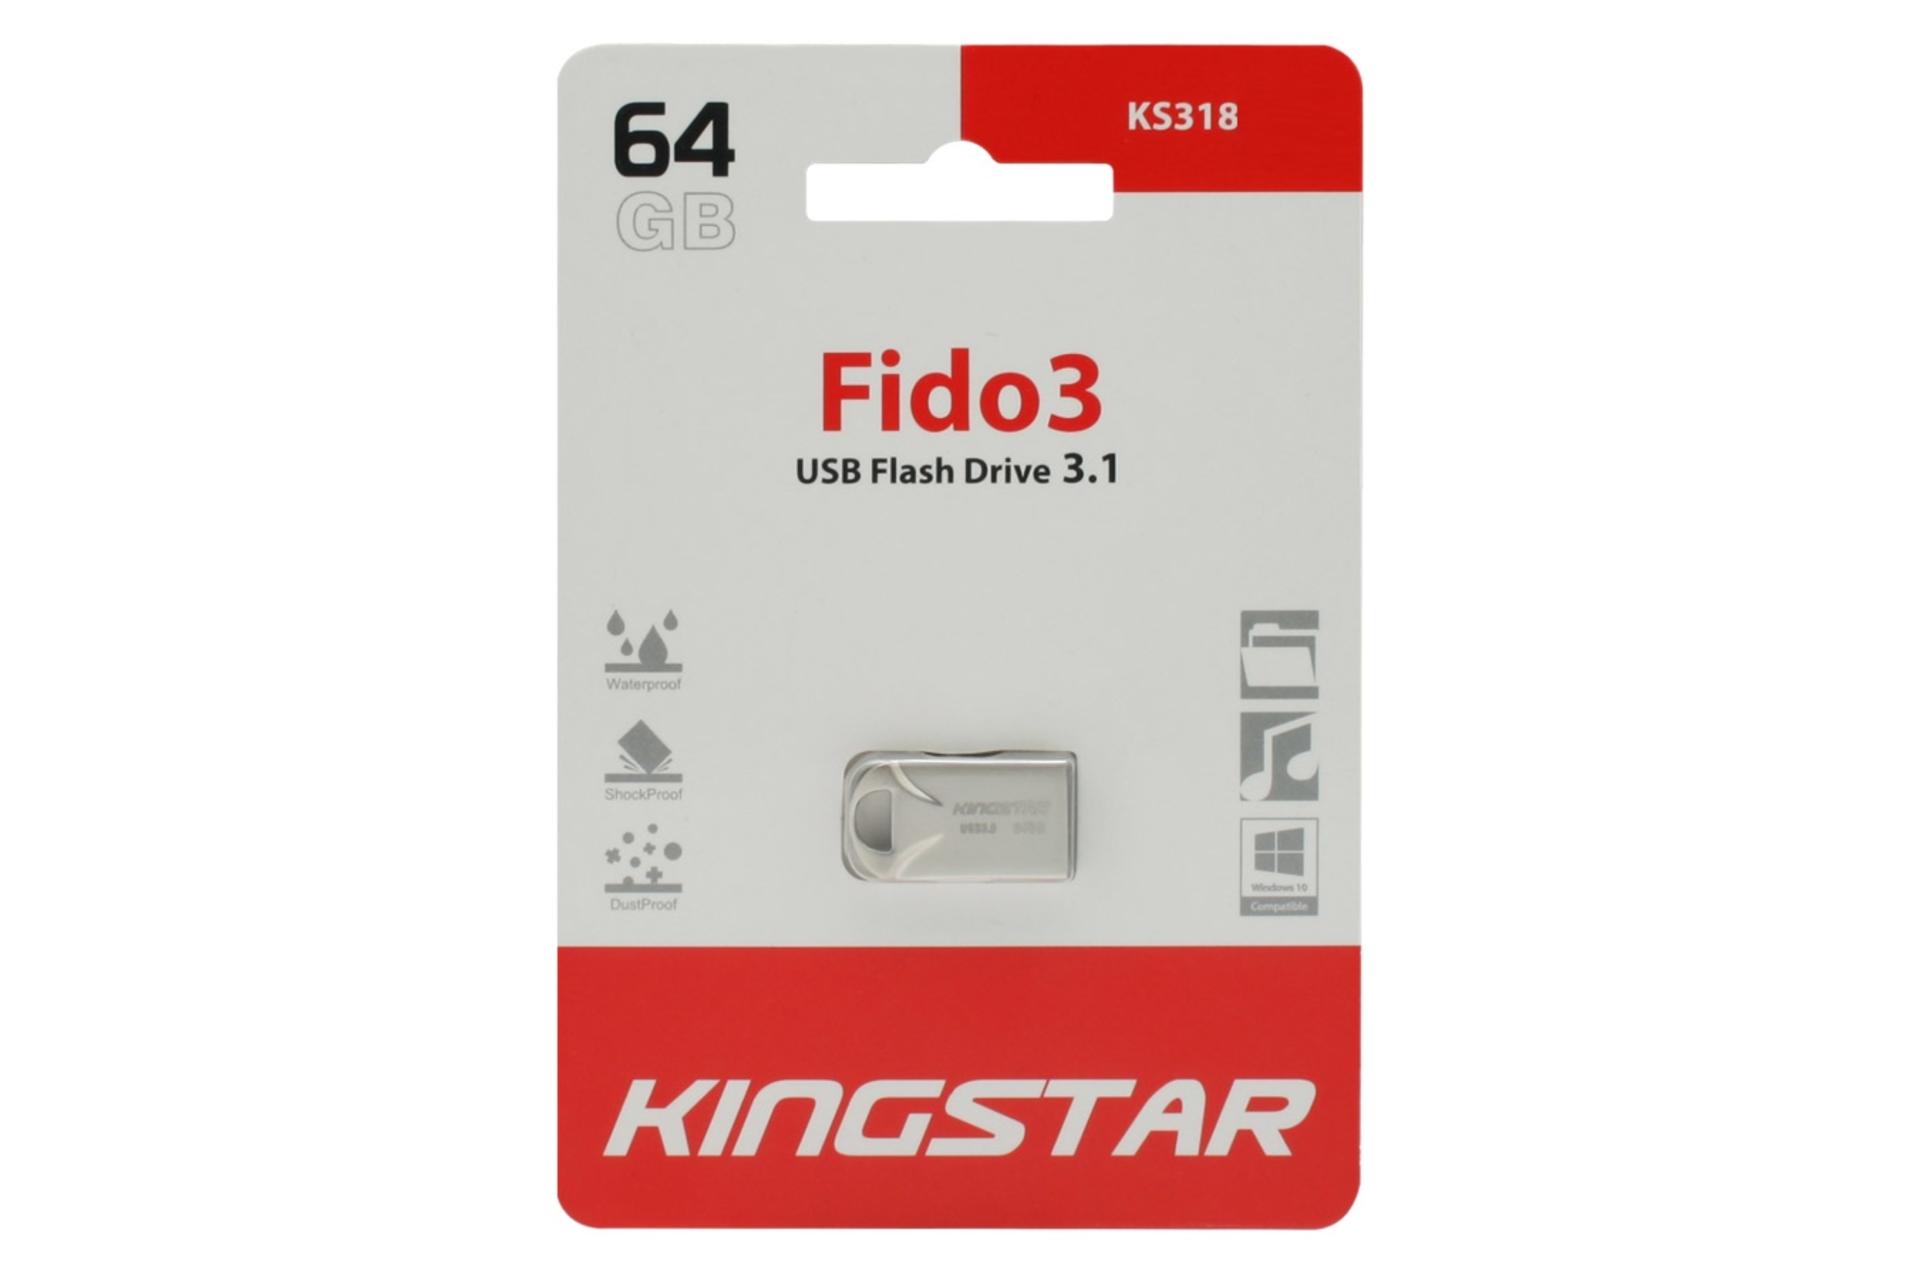 جعبه Kingstar Fido3 KS318 64GB / فلش مموری کینگ استار مدل Fido3 KS318 ظرفیت 64 گیگابایت نقره ای